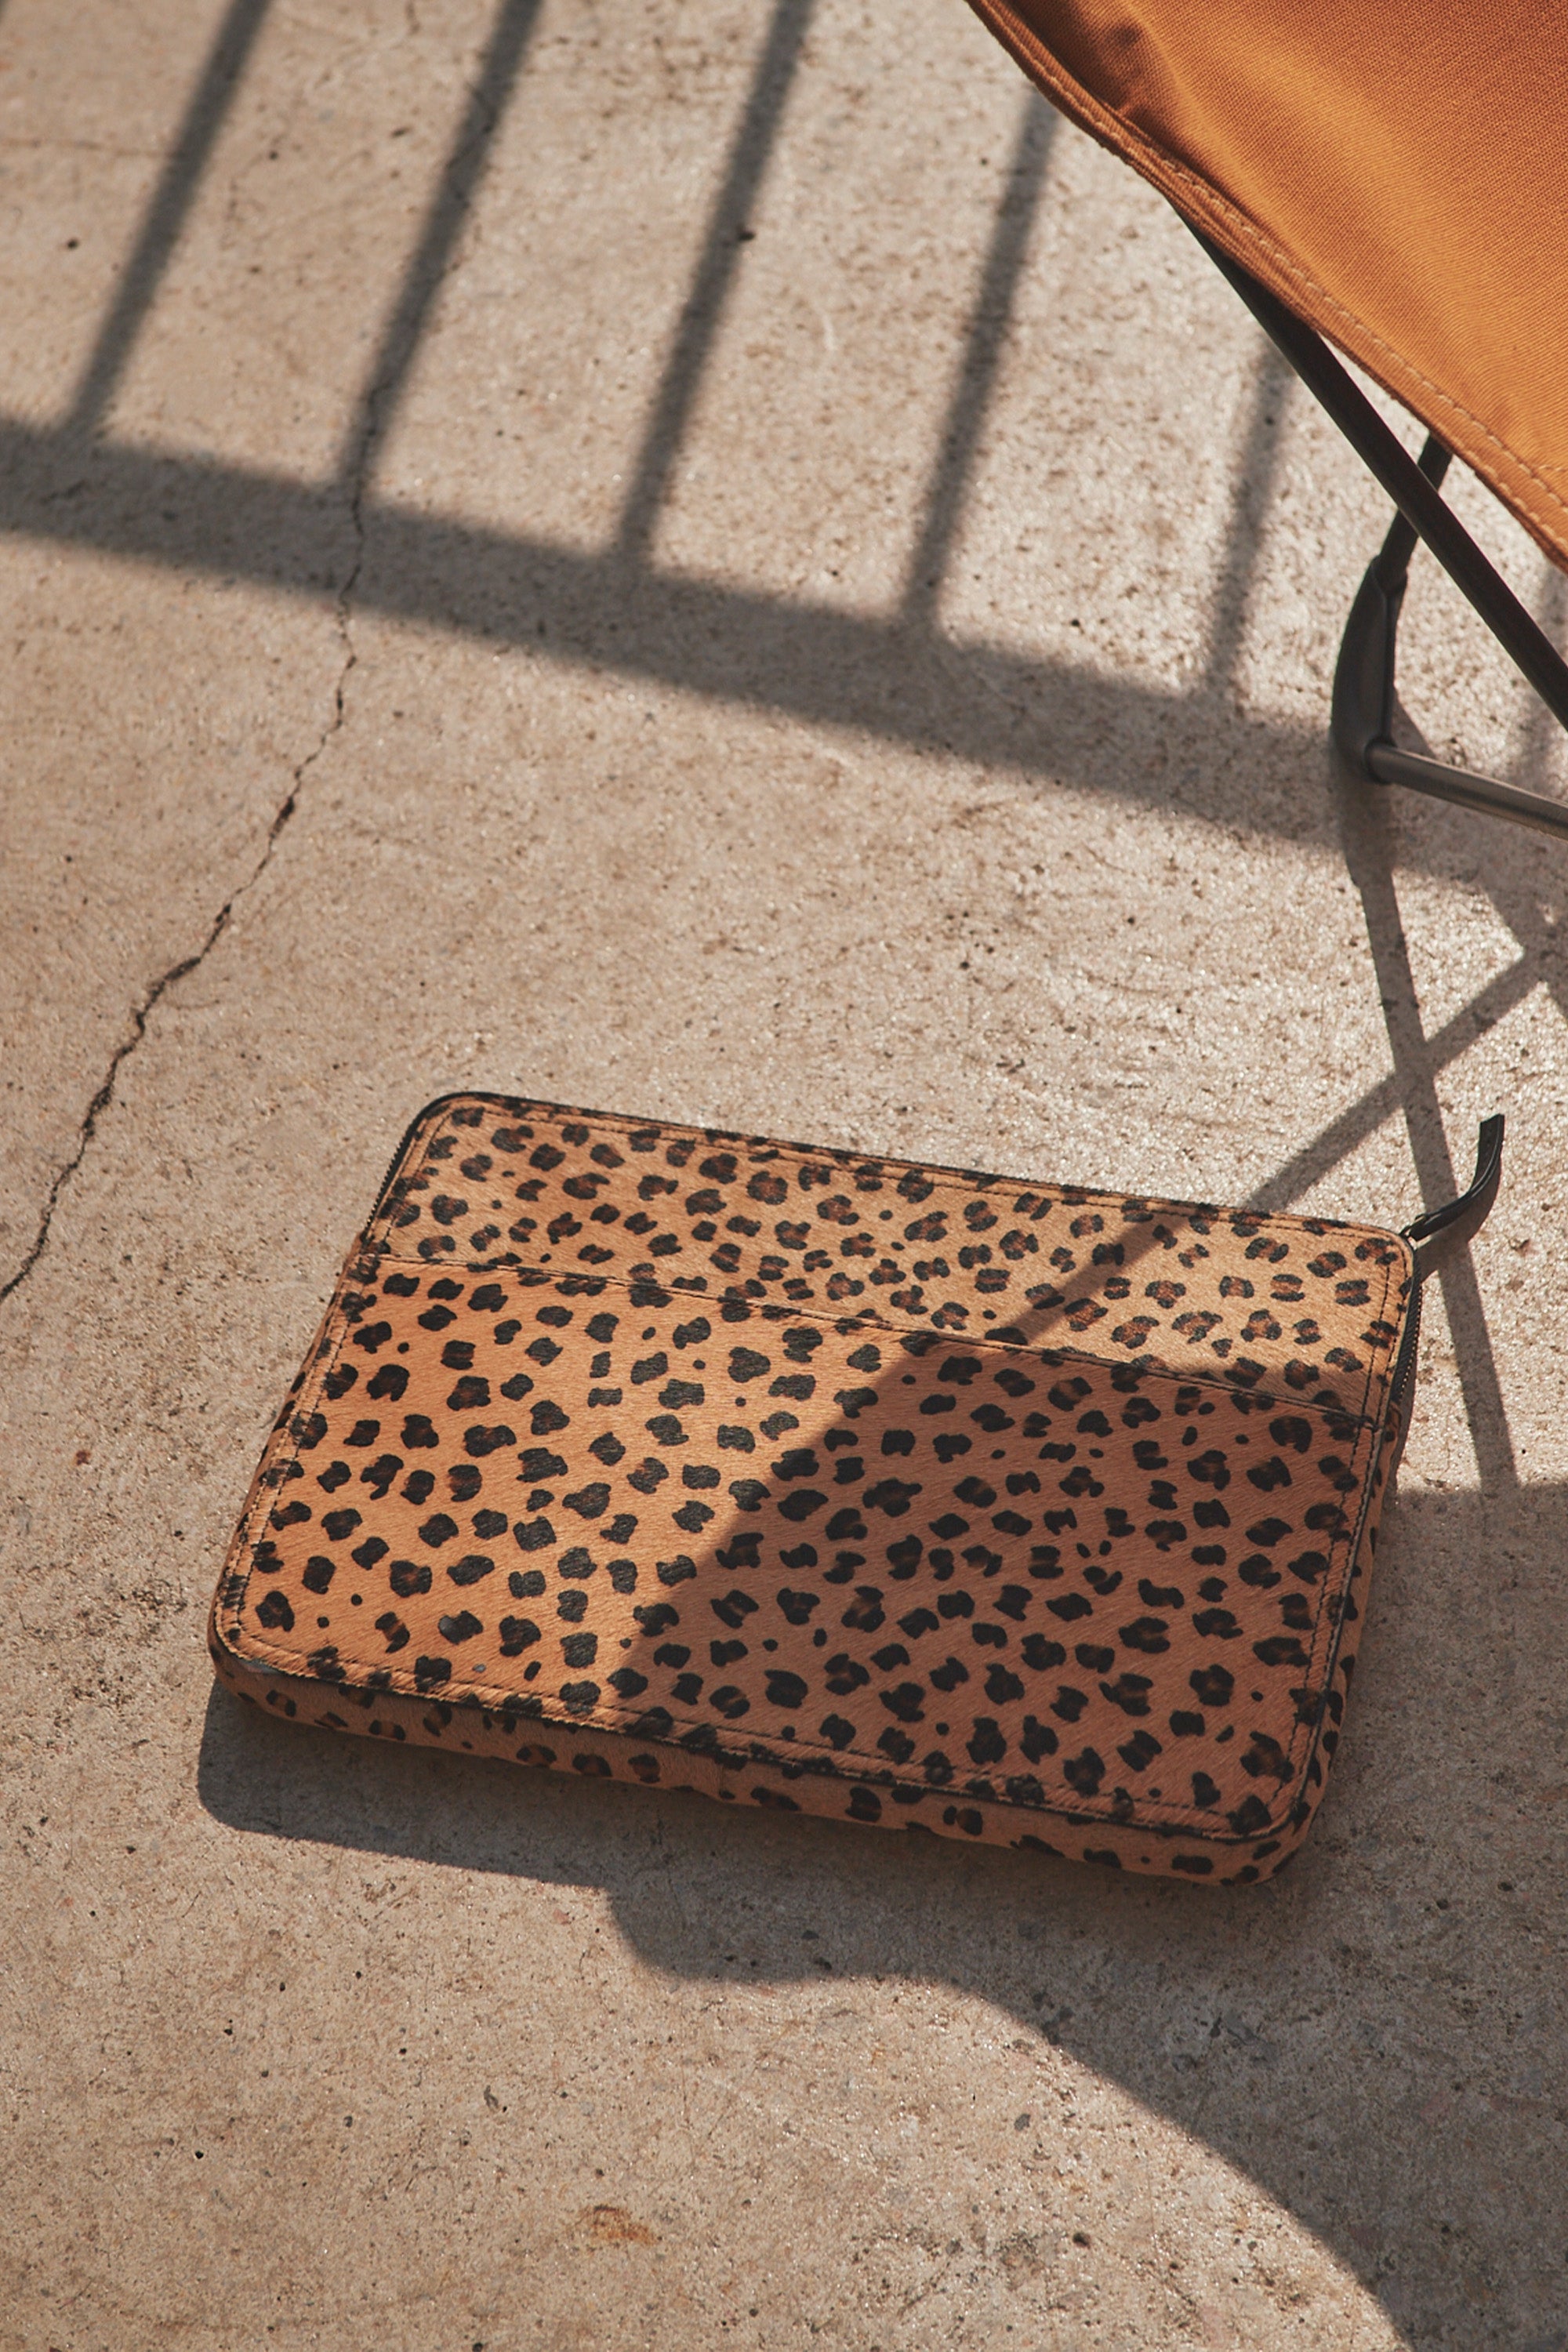 leopard laptop bag | leopard